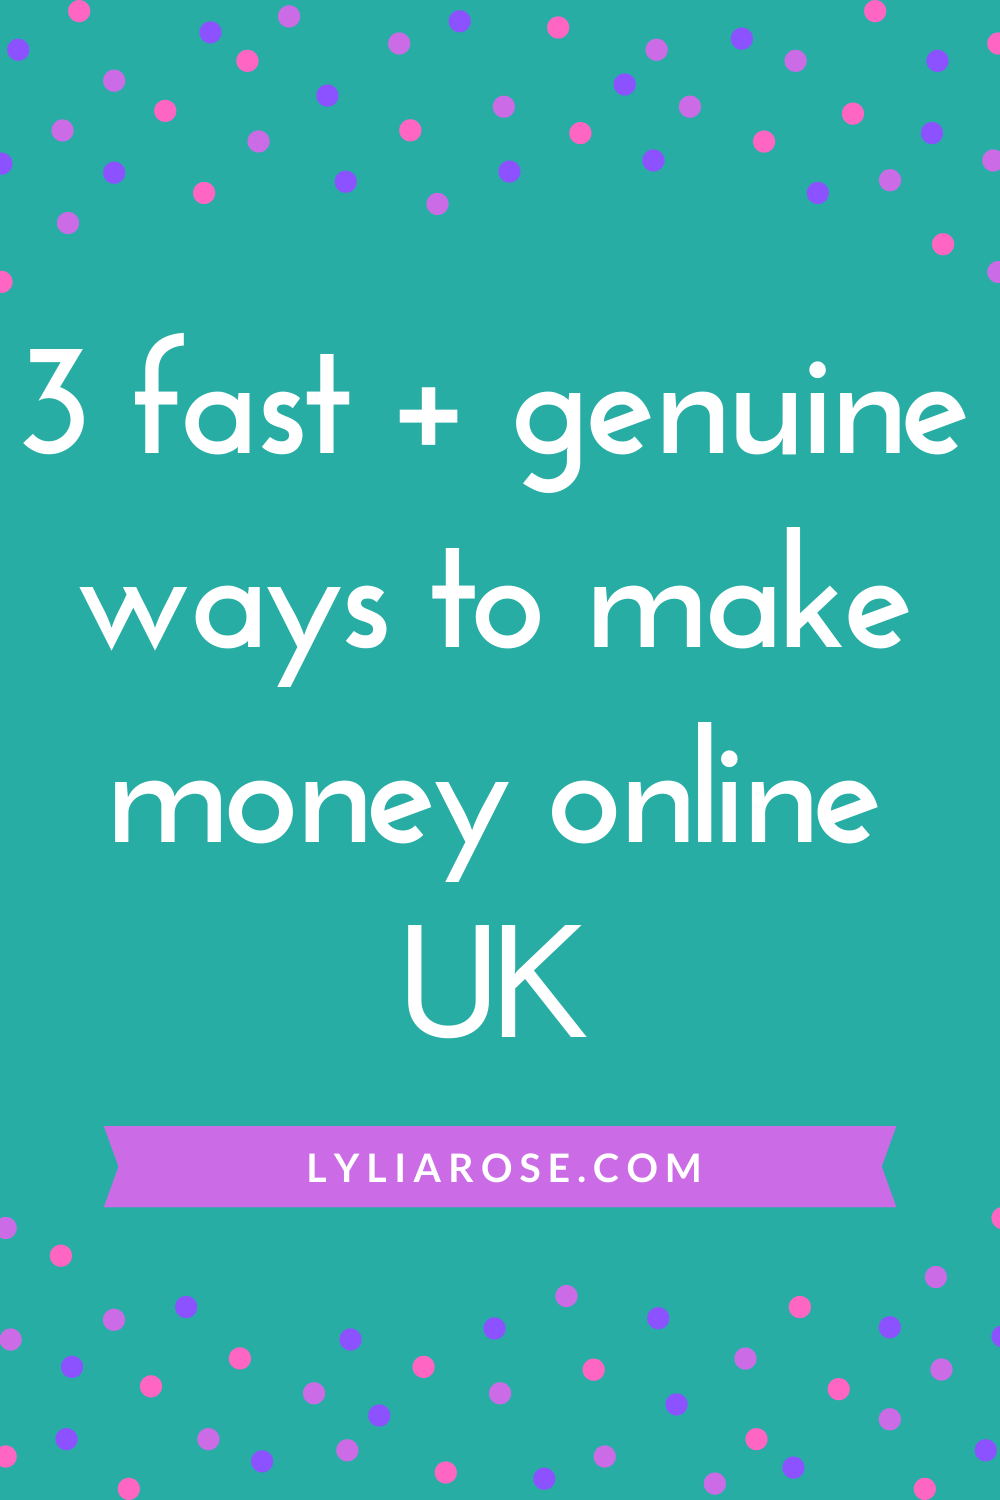 3 fast + genuine ways to make money online UK (2)